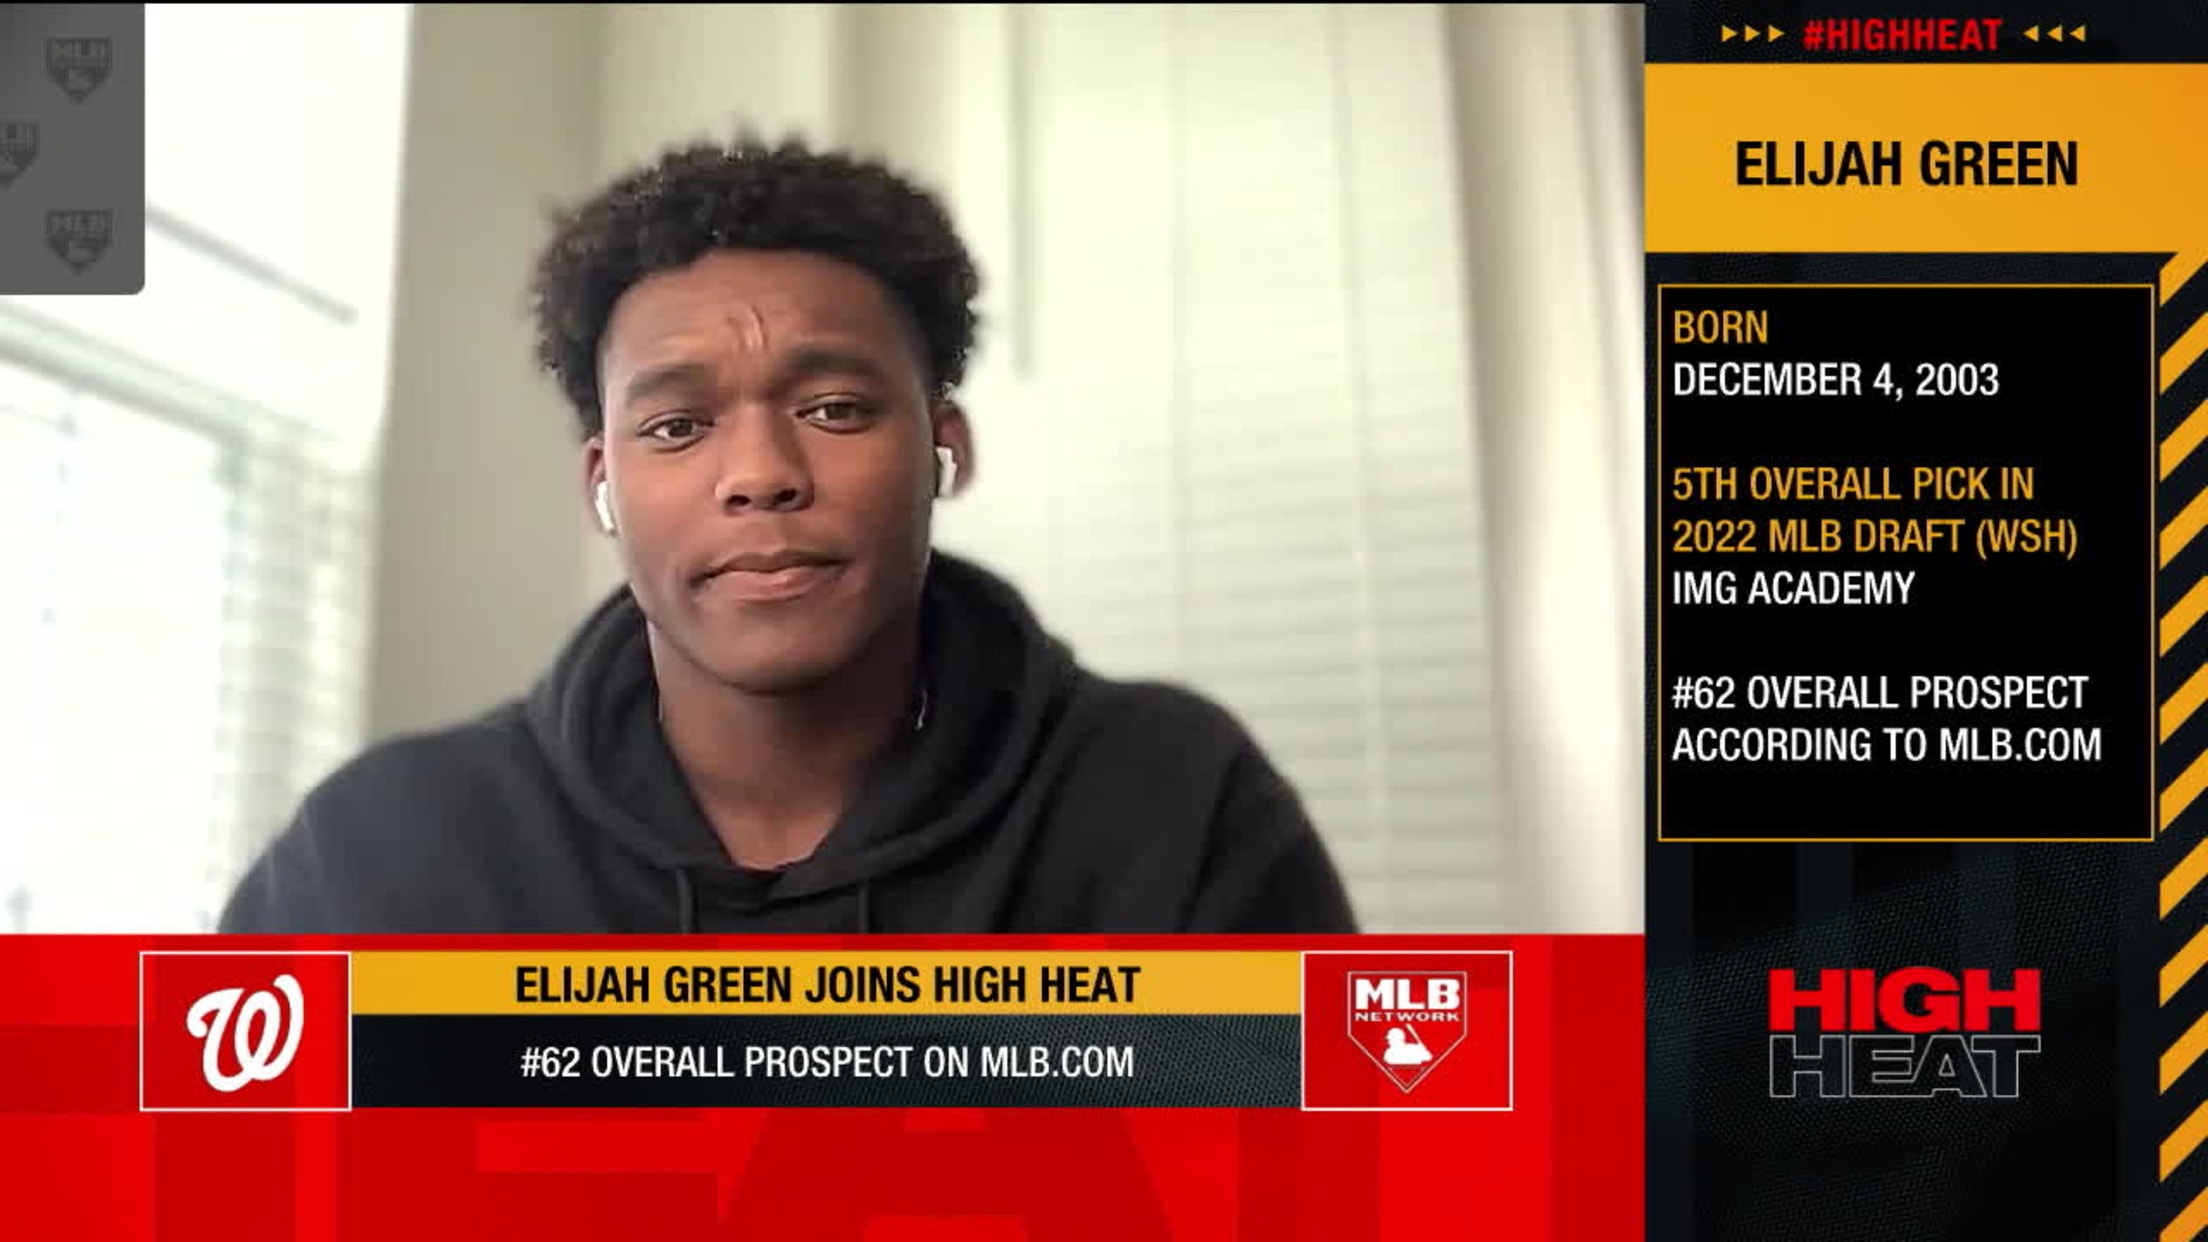 Elijah Green joins High Heat